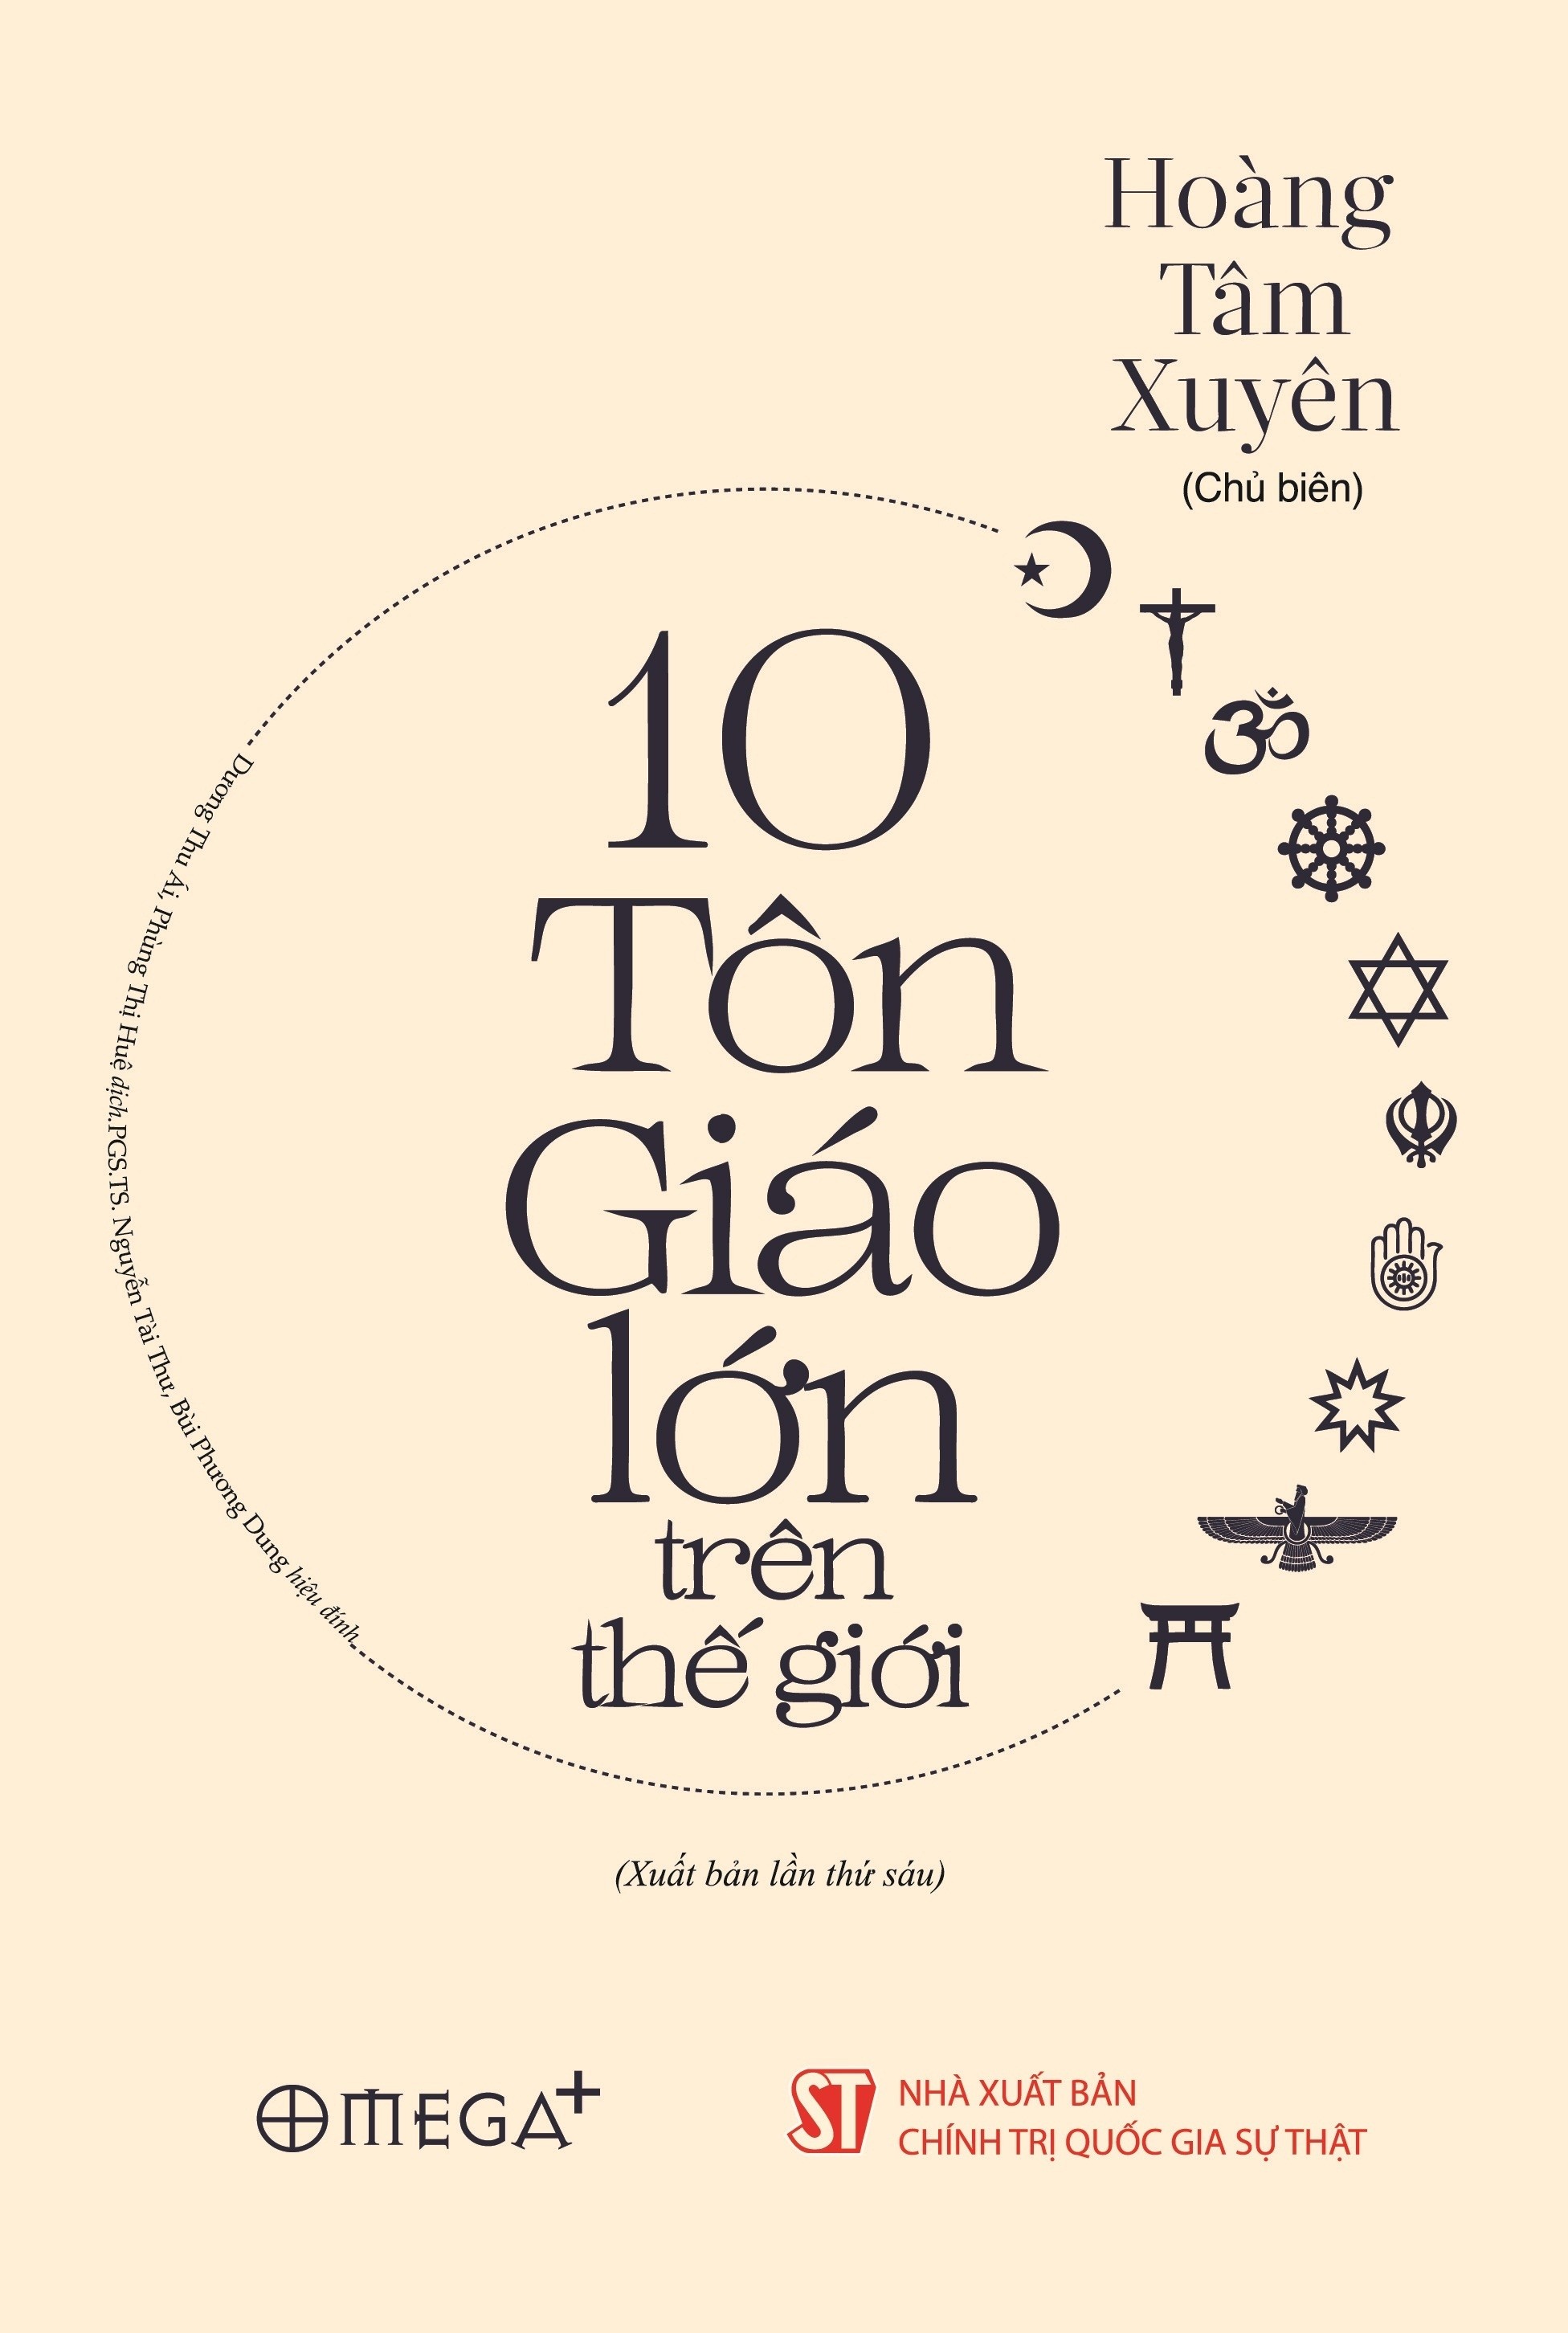 10_ton_giao_lon_tren_the_gioi